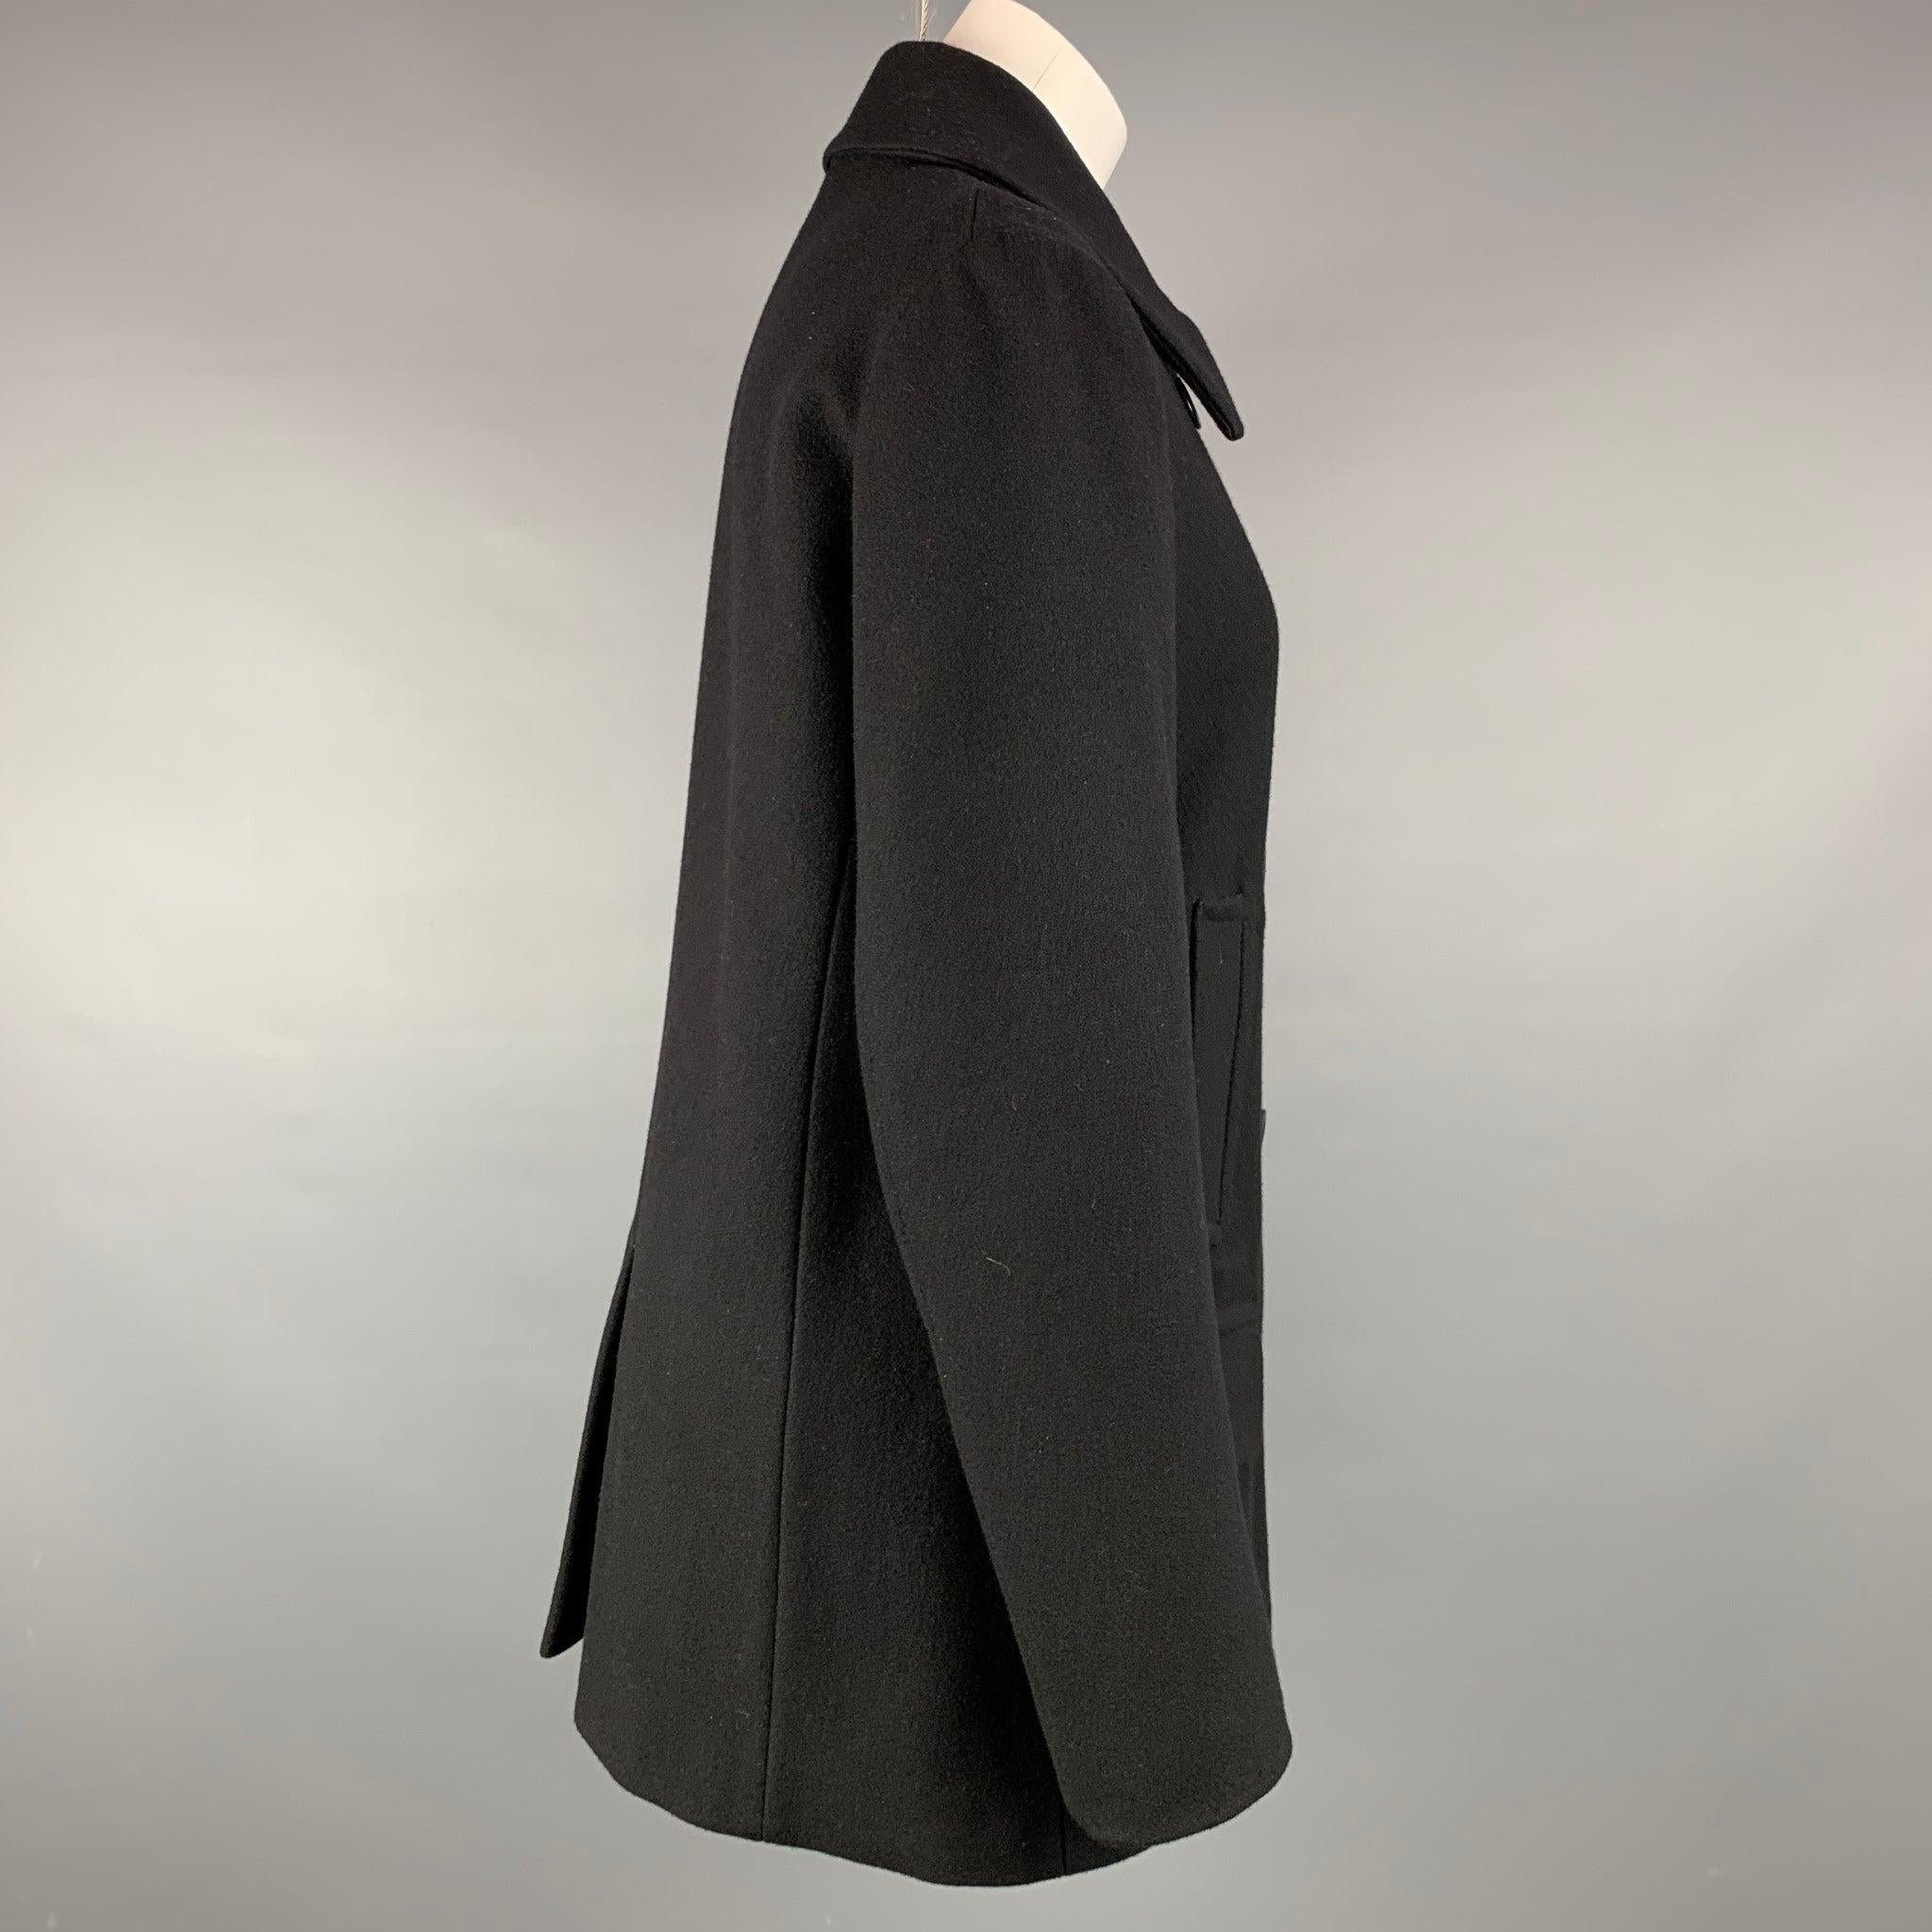 Der Mantel von DRIES VAN NOTEN ist aus einer schwarzen Wollmischung gefertigt und verfügt über einen spitzen Kragen, Pattentaschen und einen doppelten Brustverschluss.
Sehr gut
Gebrauchtes Zustand. 

Markiert:  L 

Abmessungen: 
 
Schultern: 16 Zoll